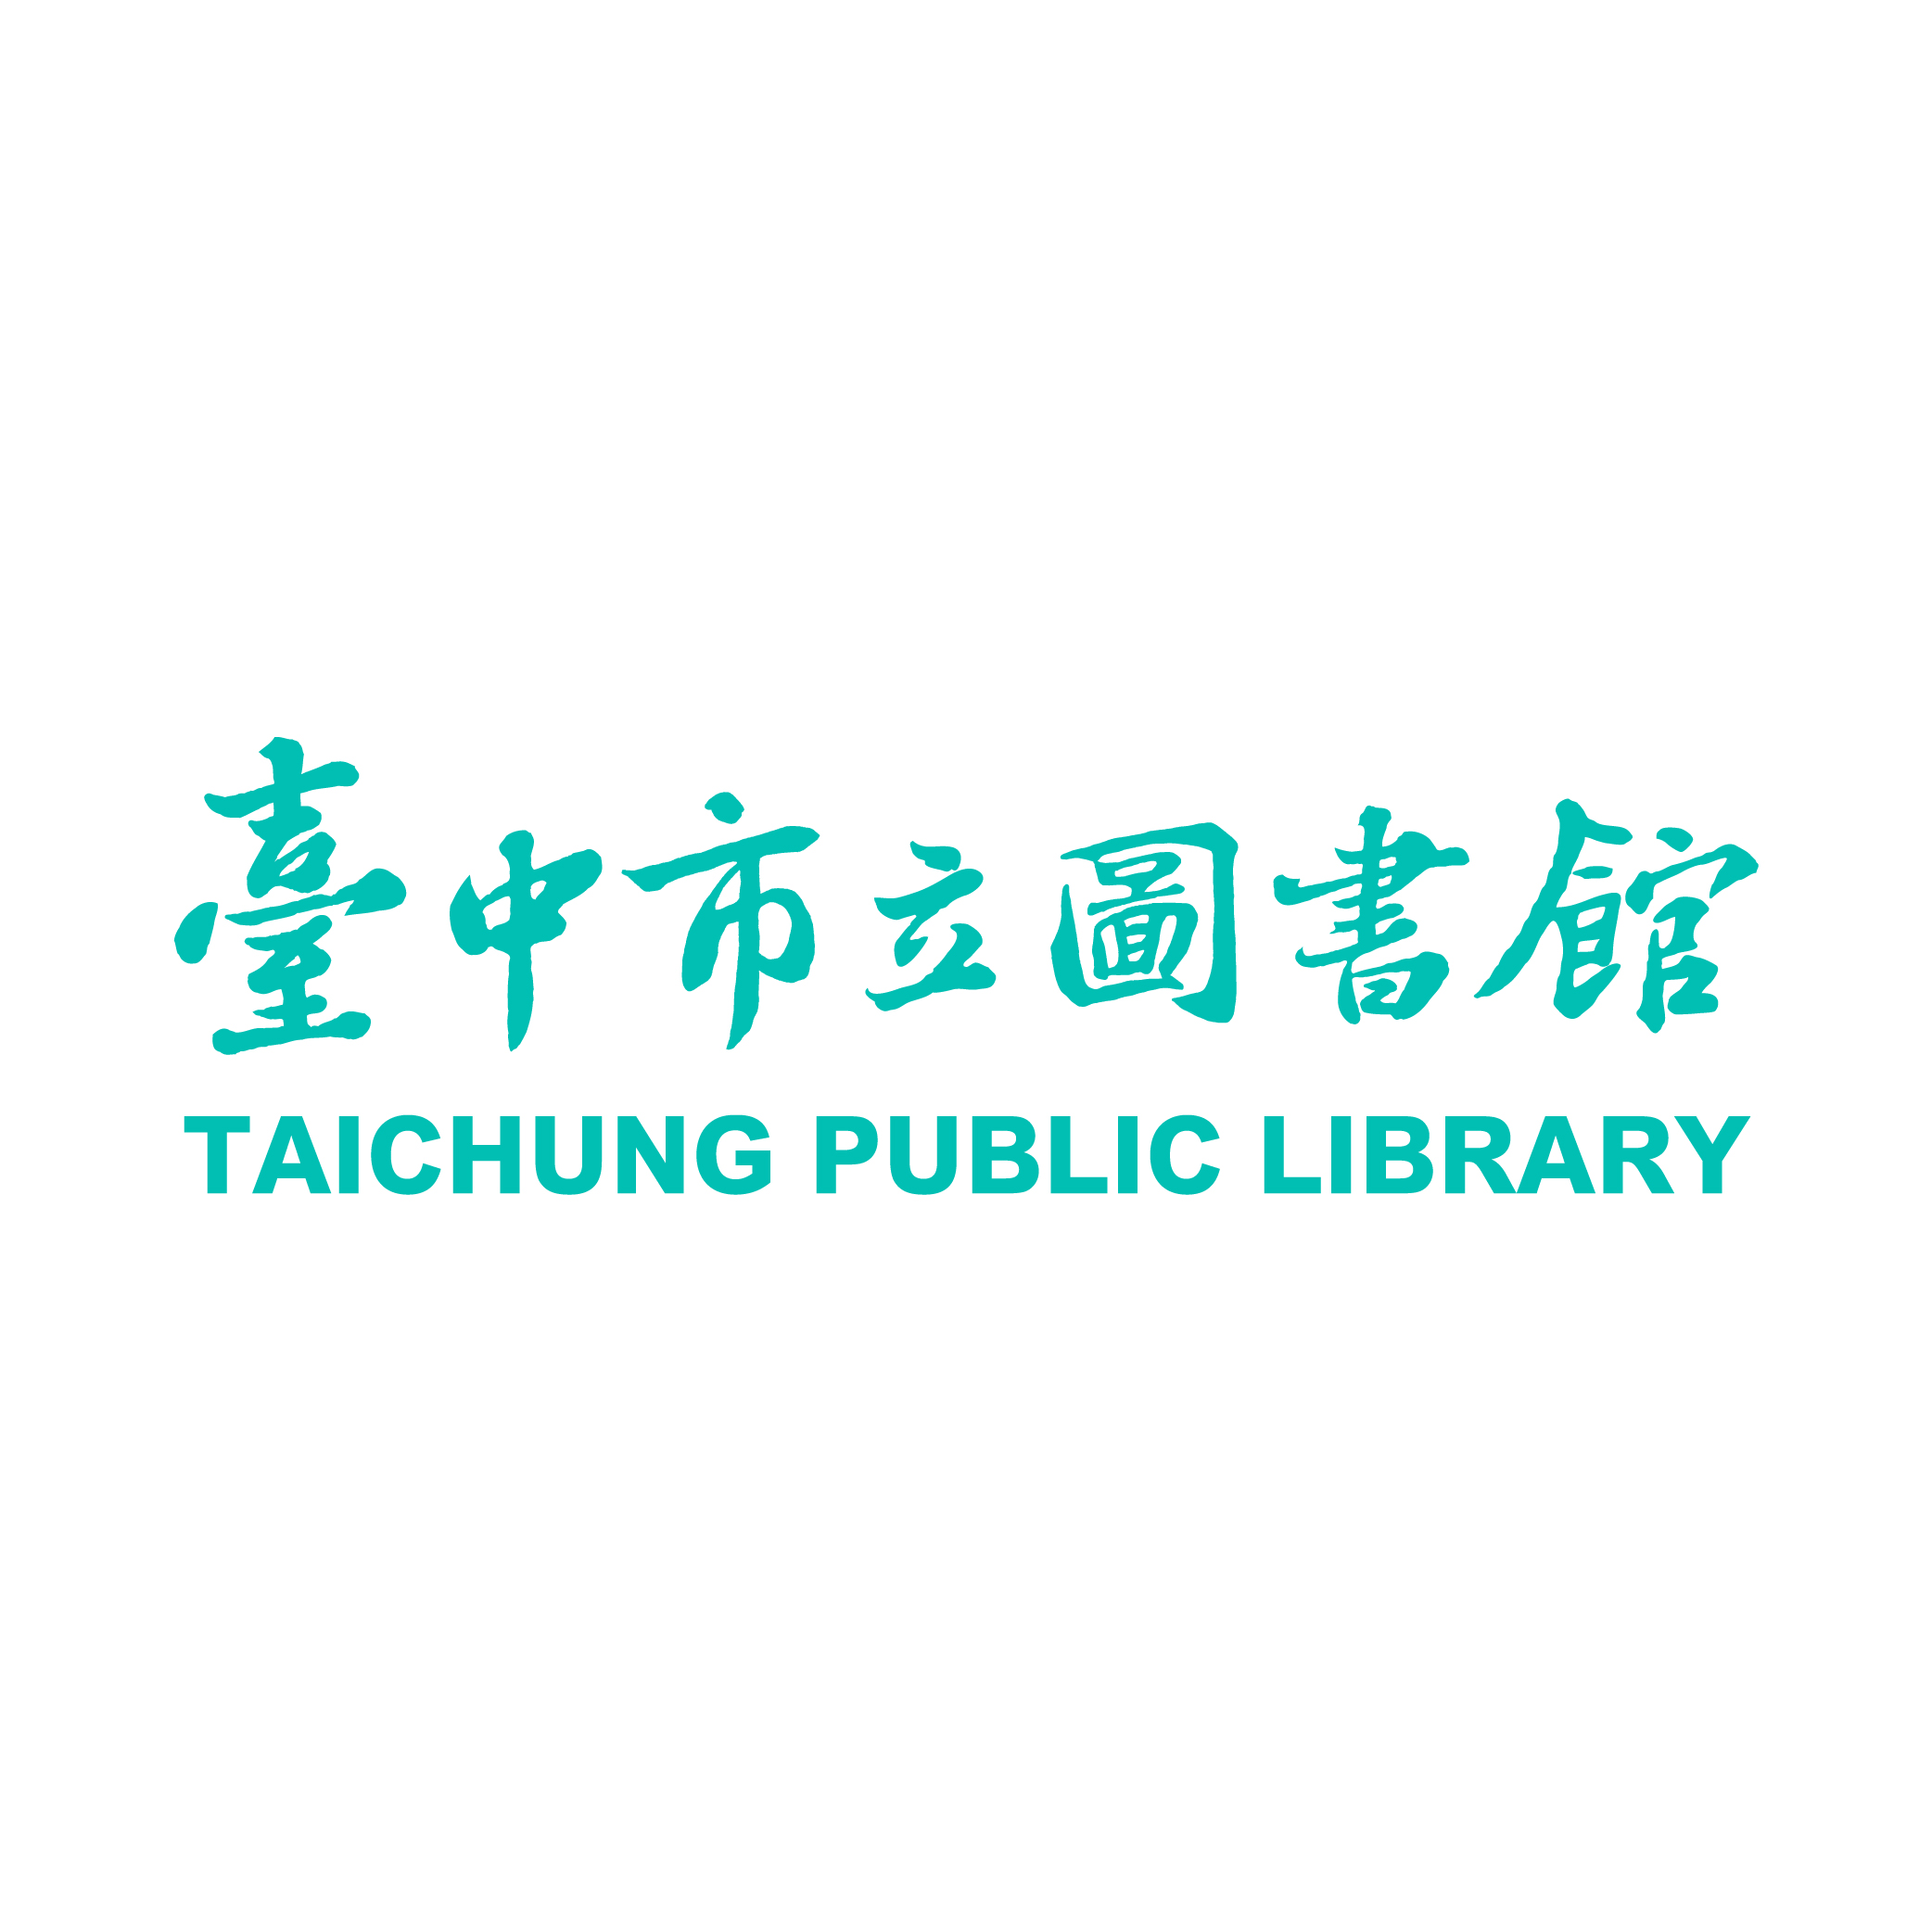 臺中市立圖書館 形象識別系統CIS徵件 民眾票選活動